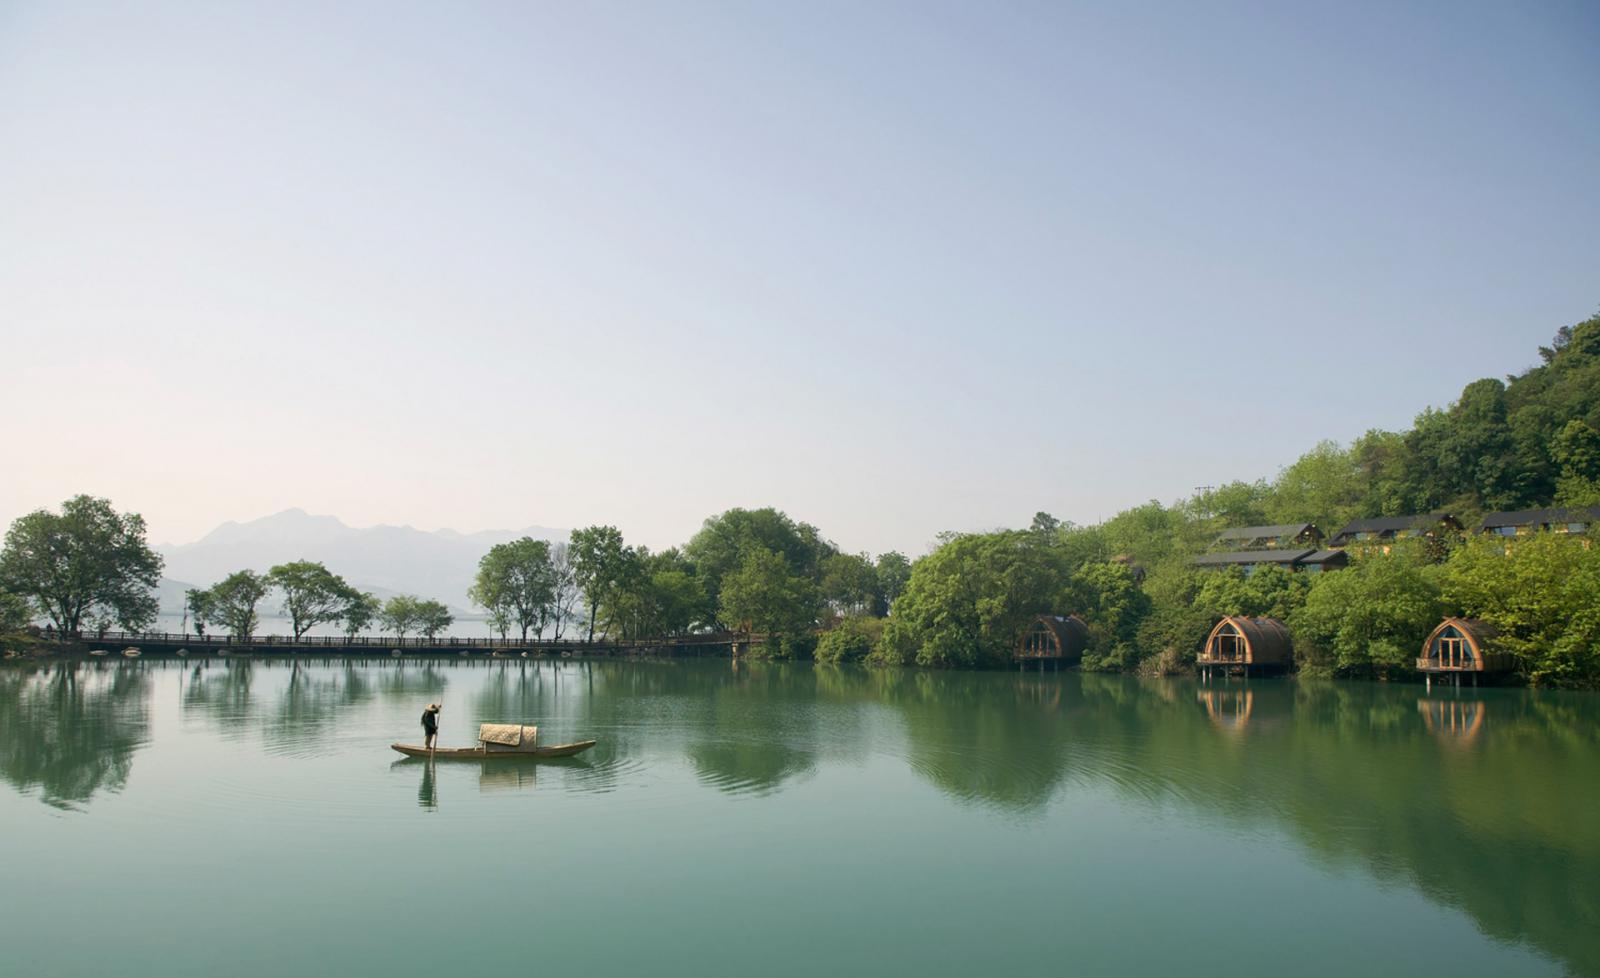 Дома-лодки: отель на китайской реке